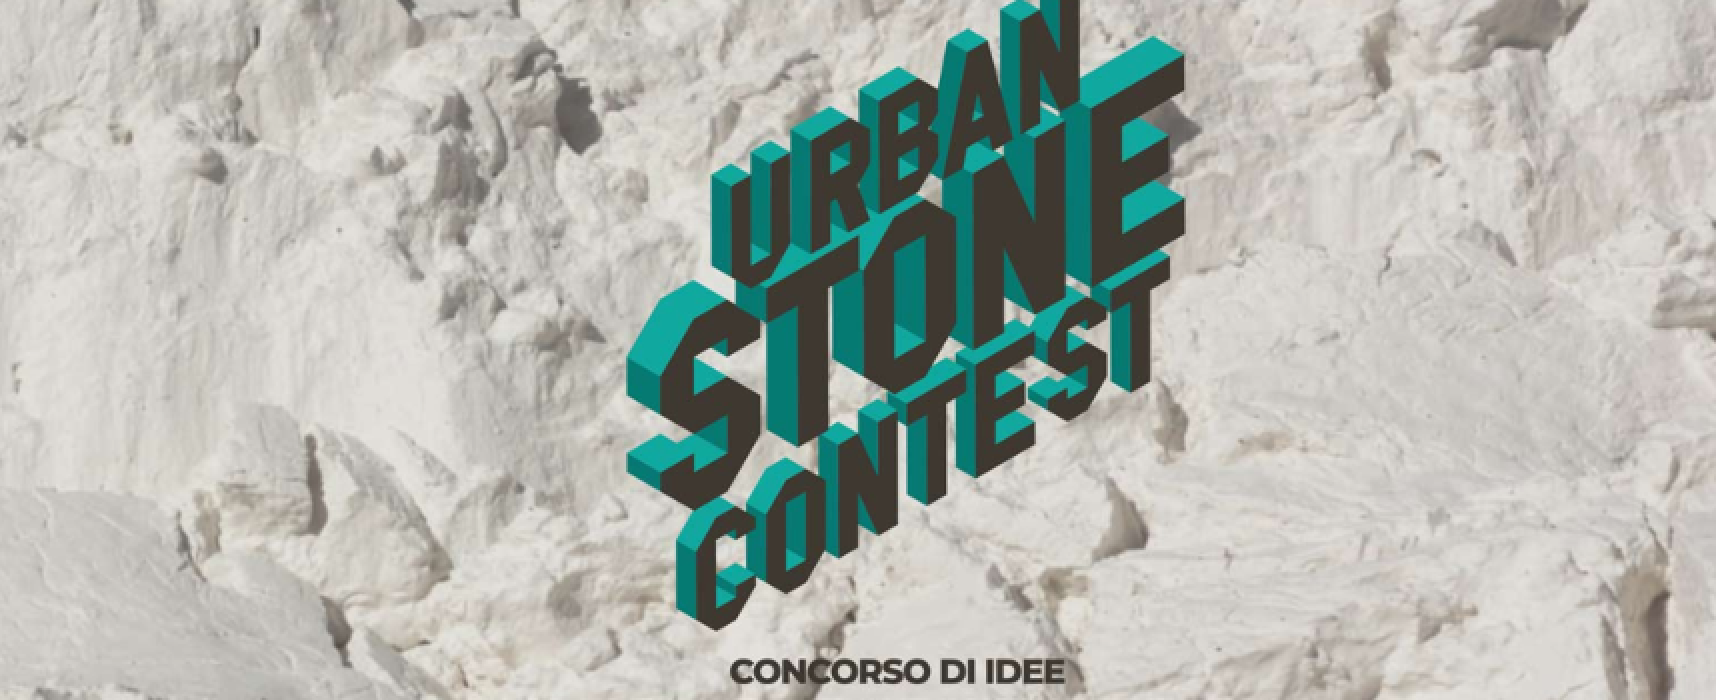 Urban stone contest, concorso per la realizzazione di un modulo tipo di seduta urbana